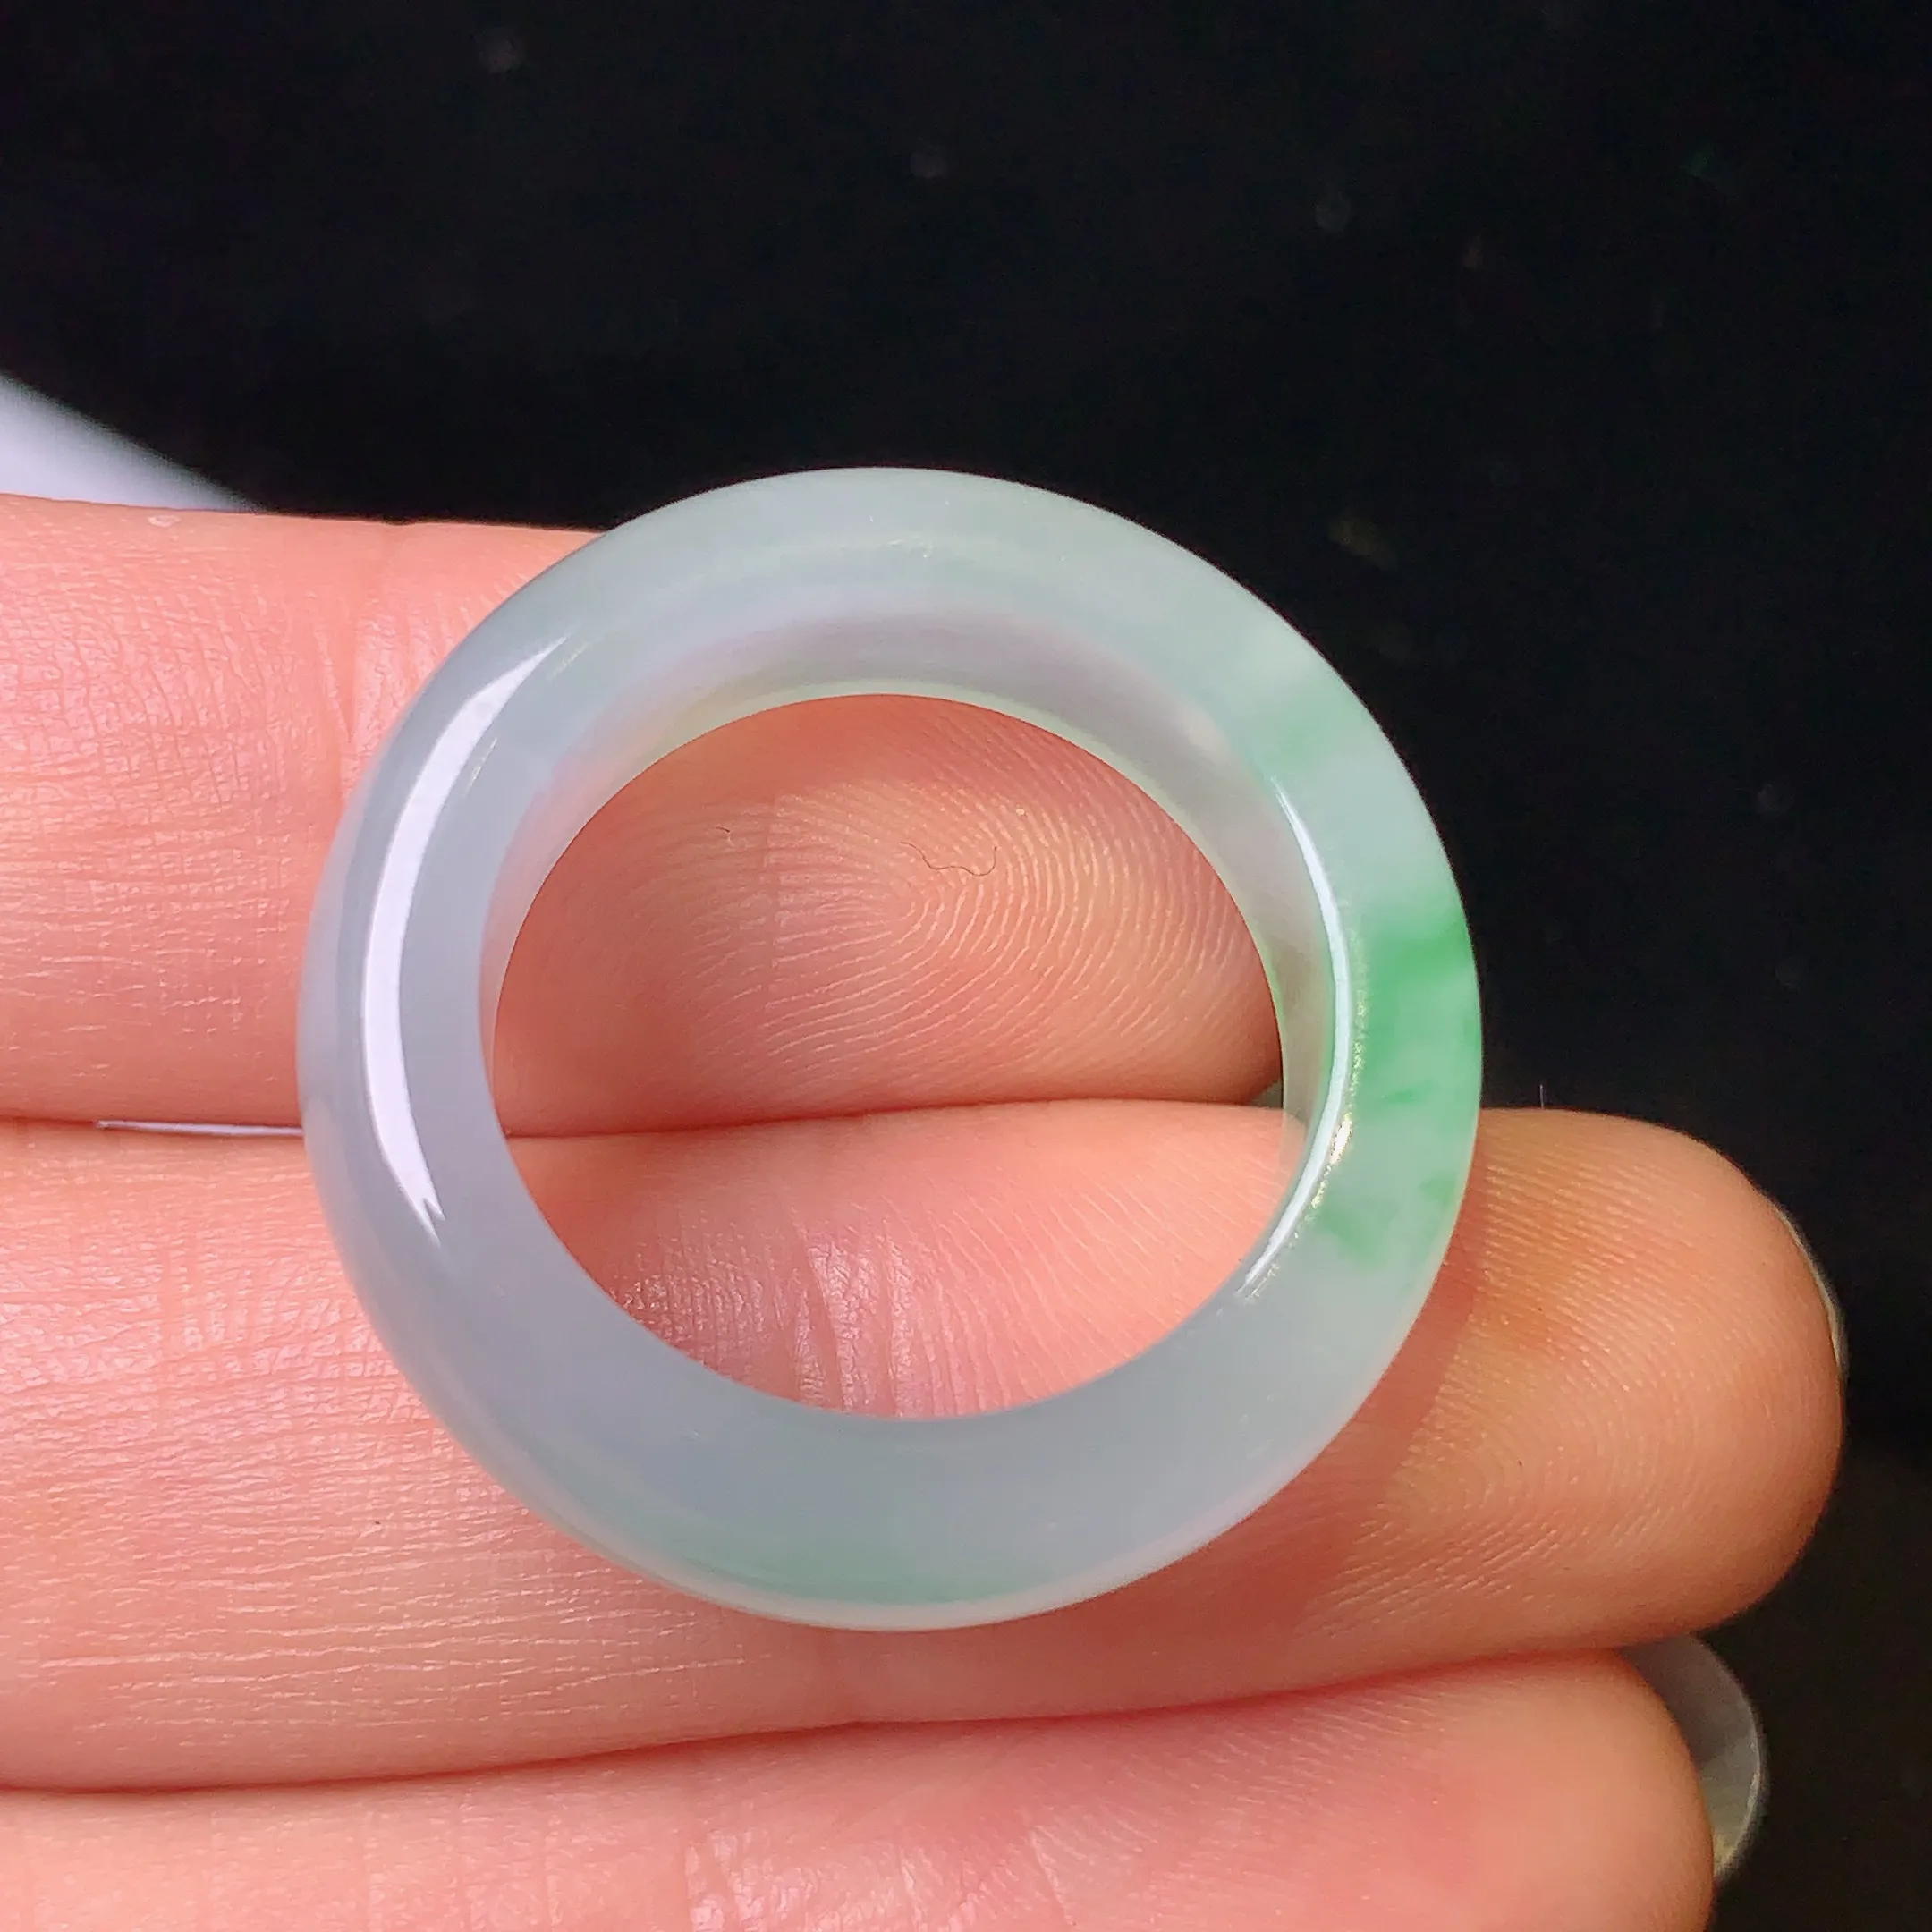 飘绿指环 玉质细腻 水润透亮 圈口15.5 整体尺寸25.3*7.4*3.8